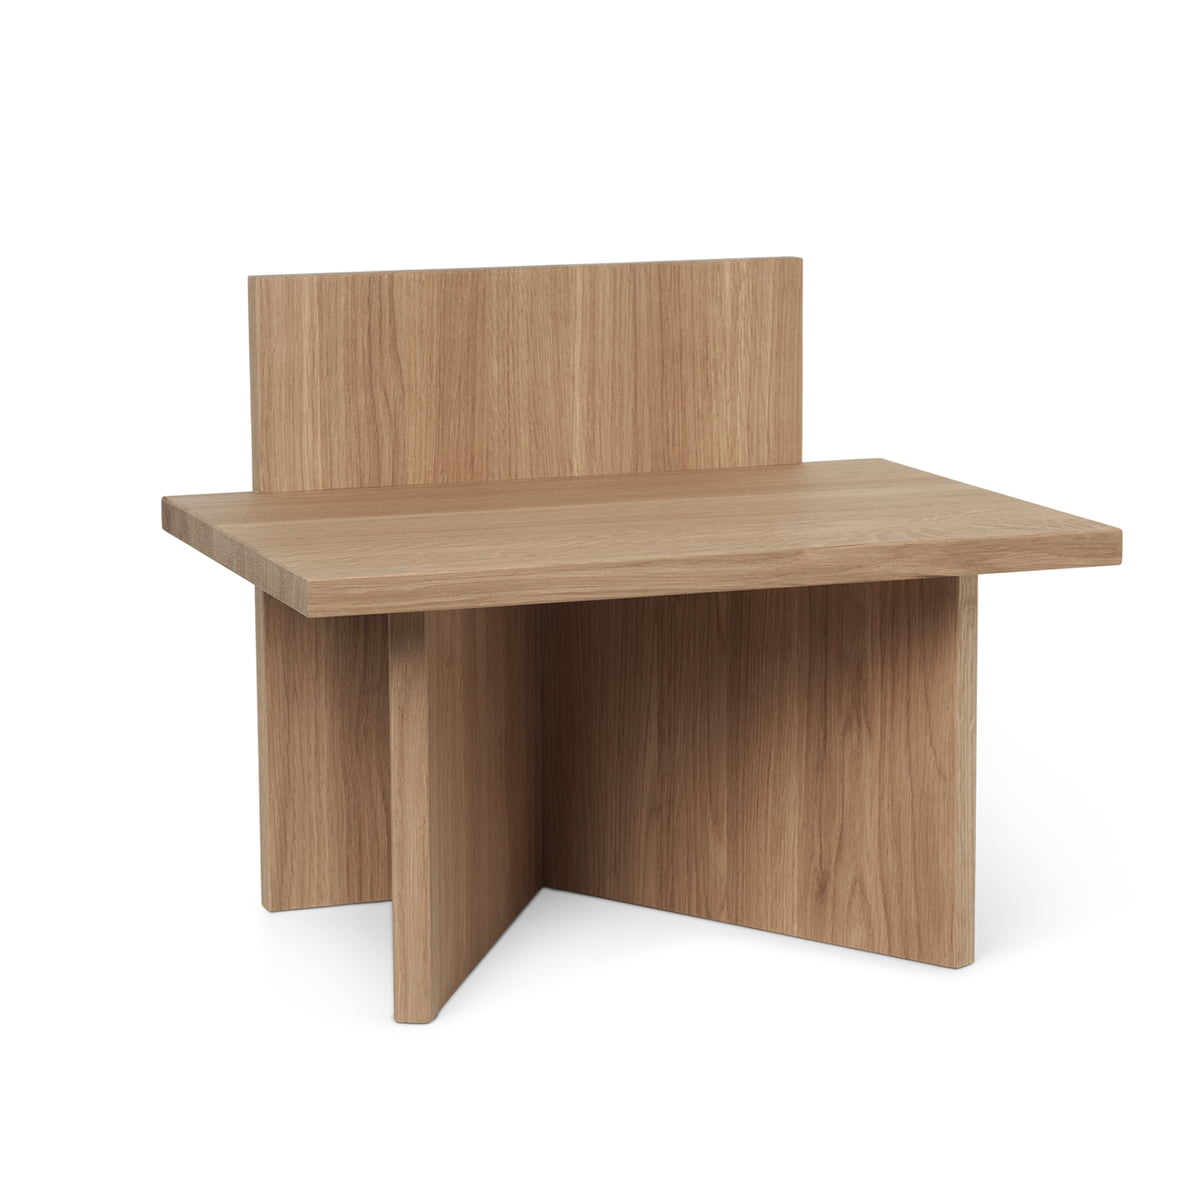 ferm living - Oblique stool/ shelf